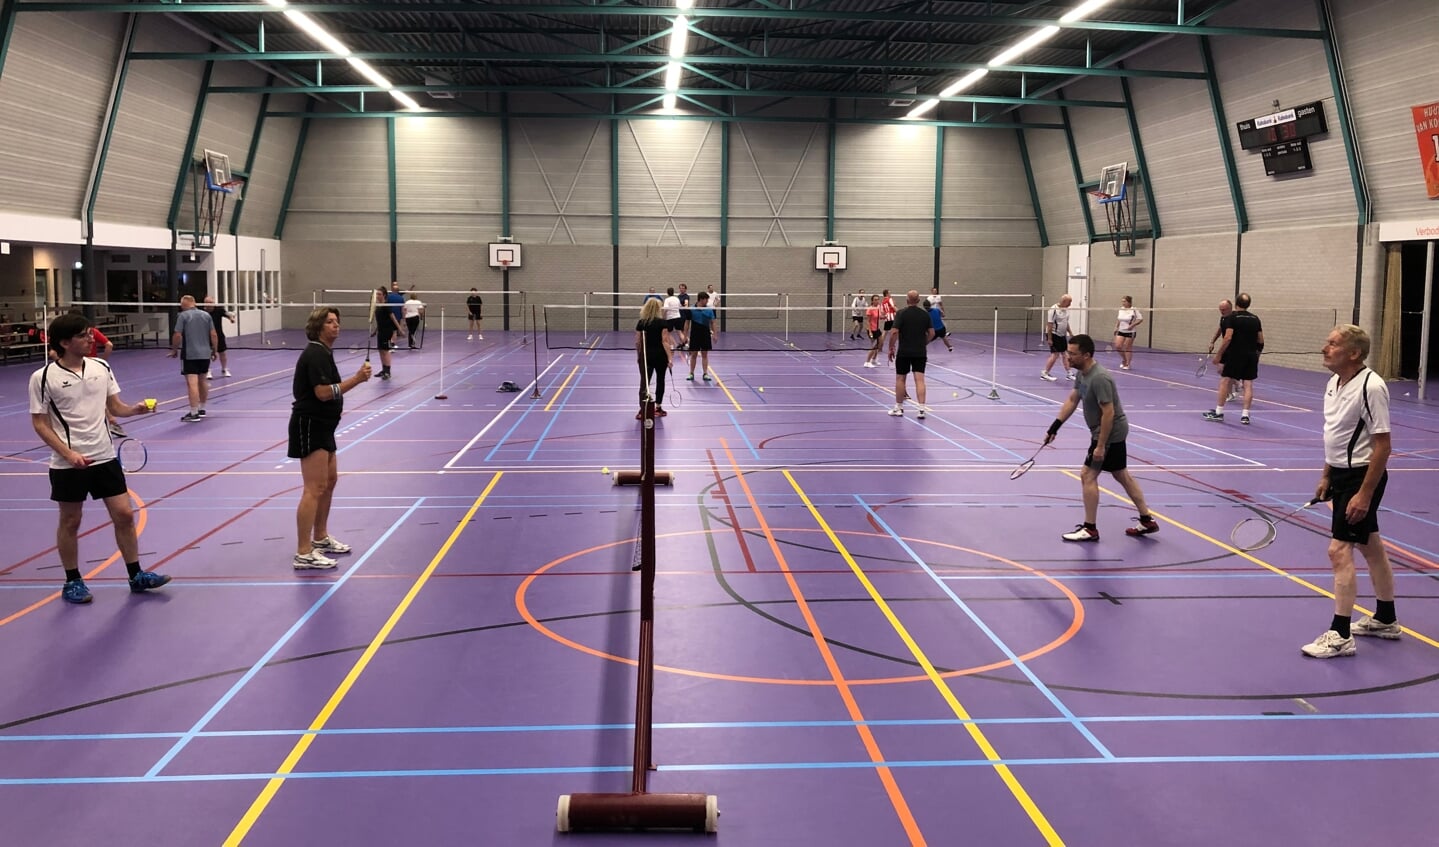 Er mag weer gebadmintond worden bij Badminton Club Lieshout.